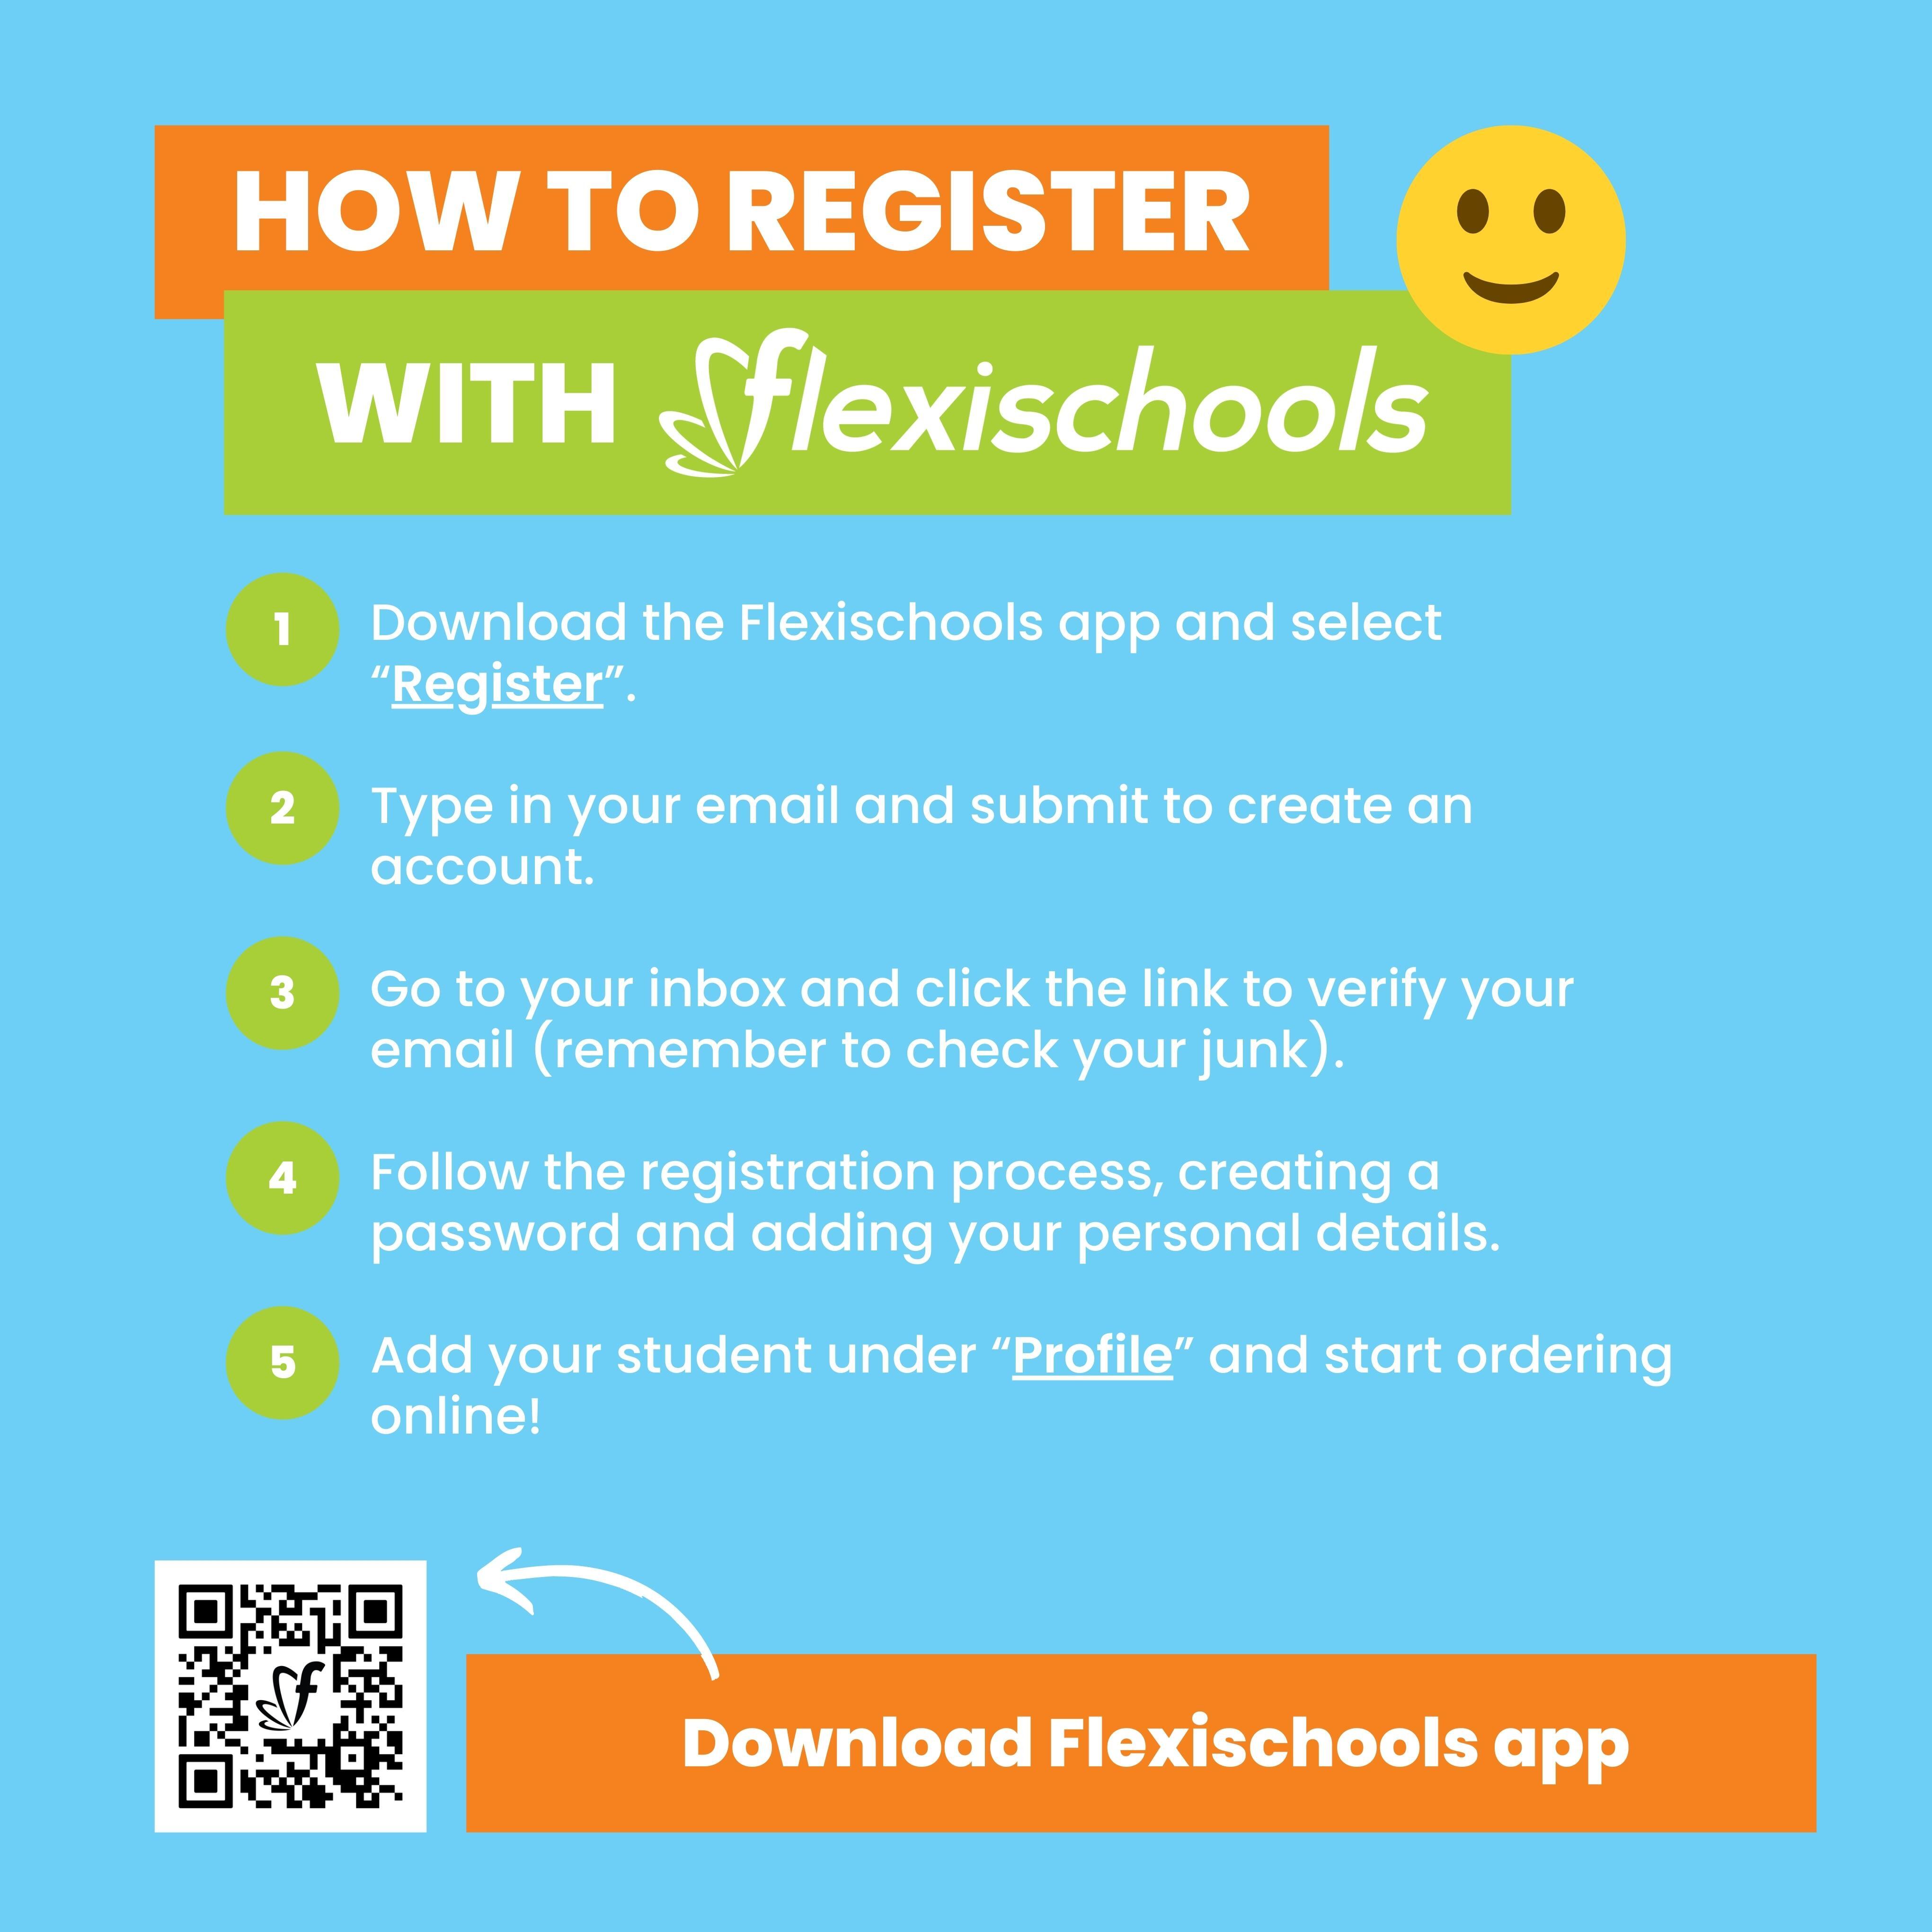 Flexischools - How to Register 